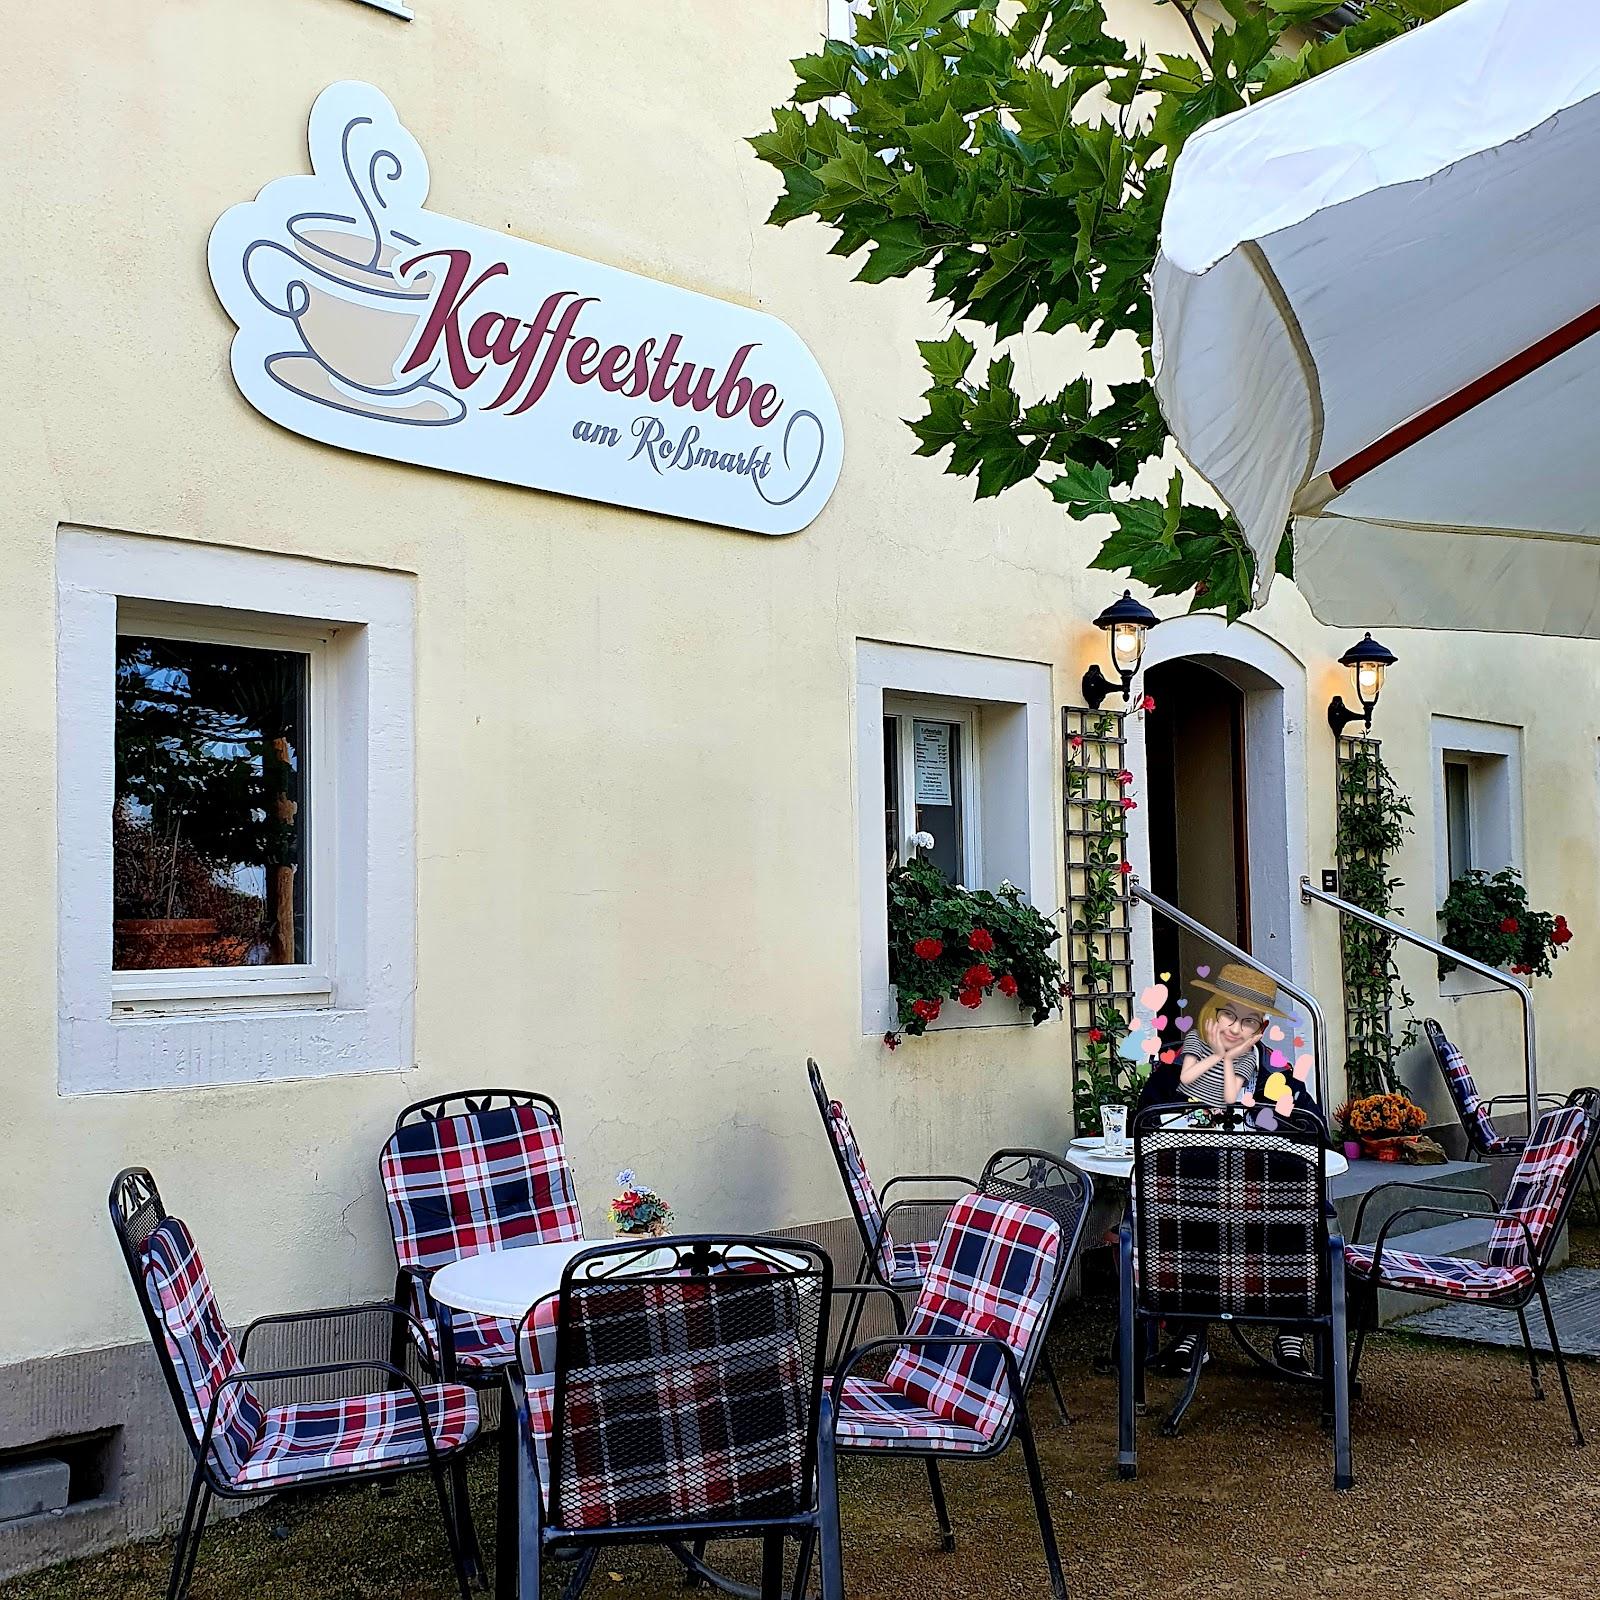 Restaurant "Kaffeestube am Roßmarkt" in Moritzburg